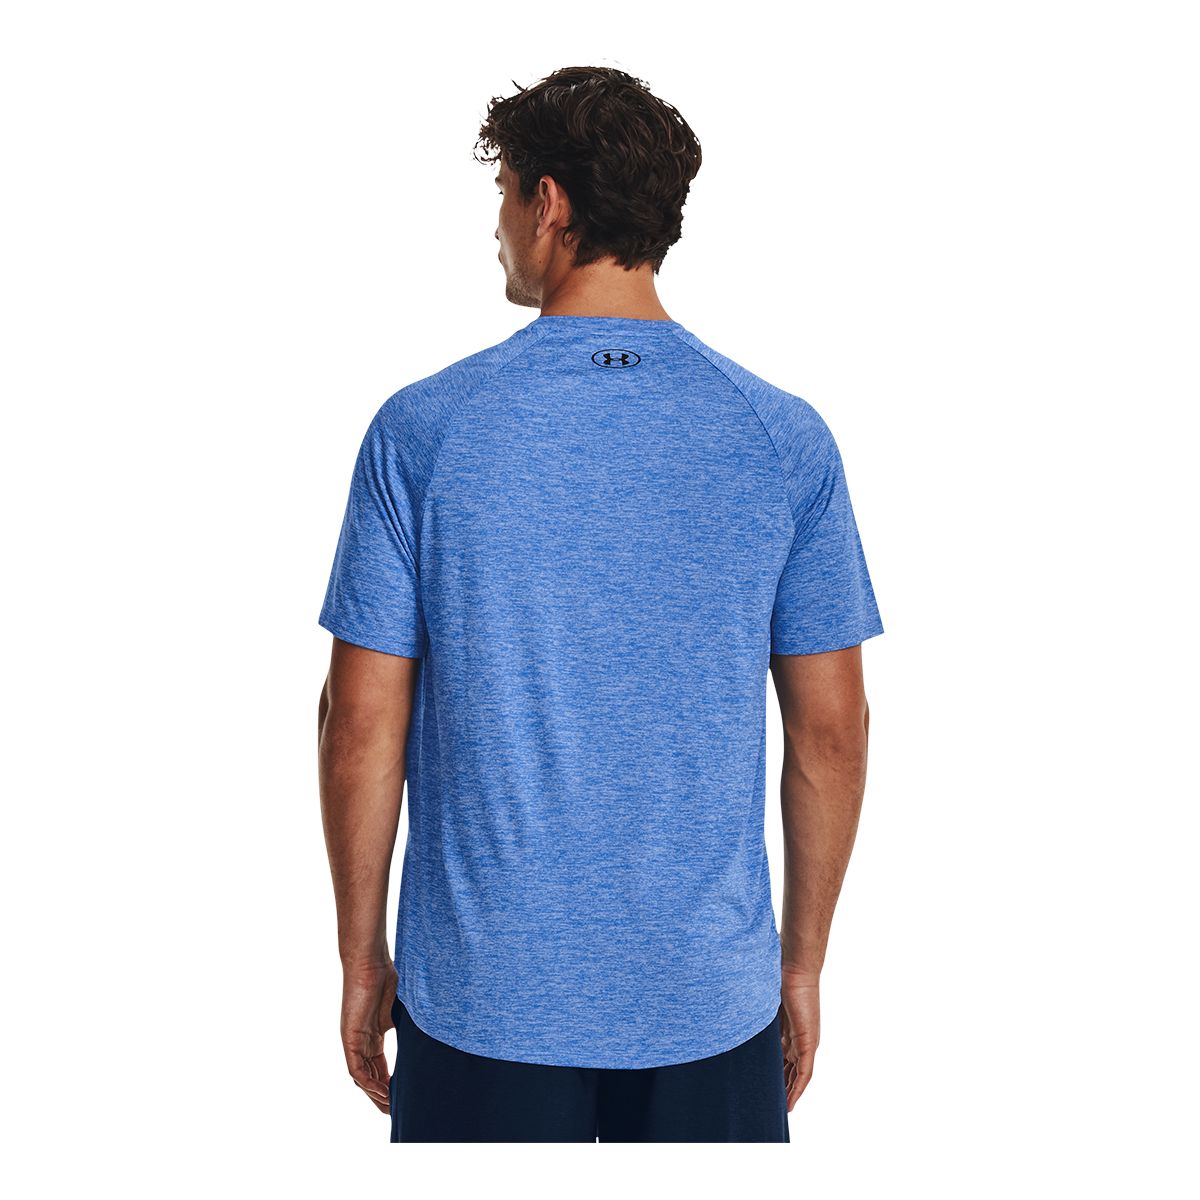 Under Armour - UA Tech 2.0 S/S Tee Novelty - Sport shirt - Varsity Blue /  Blizzard | S - Regular